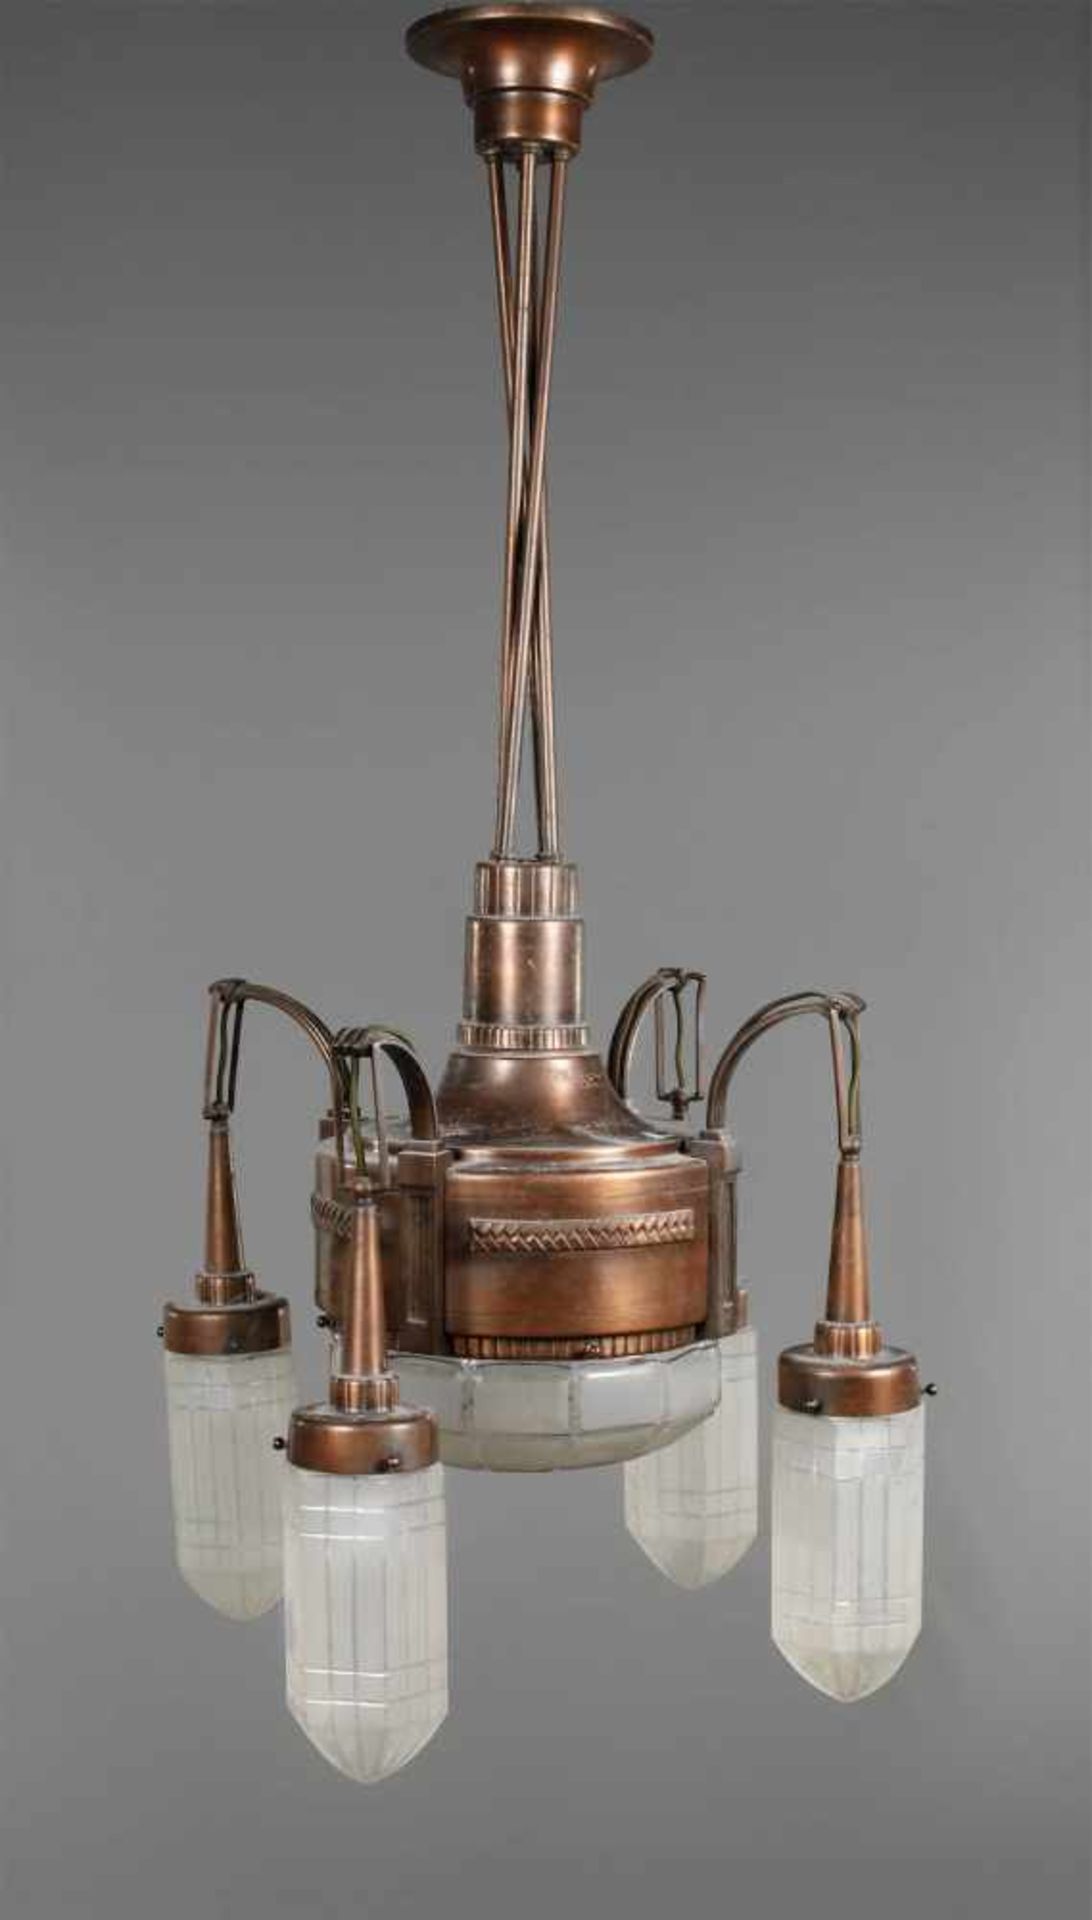 Deckenlampe Jugendstilum 1910, Bronze teils massiv bzw. ornamental getrieben, ringförmiges Gehäuse